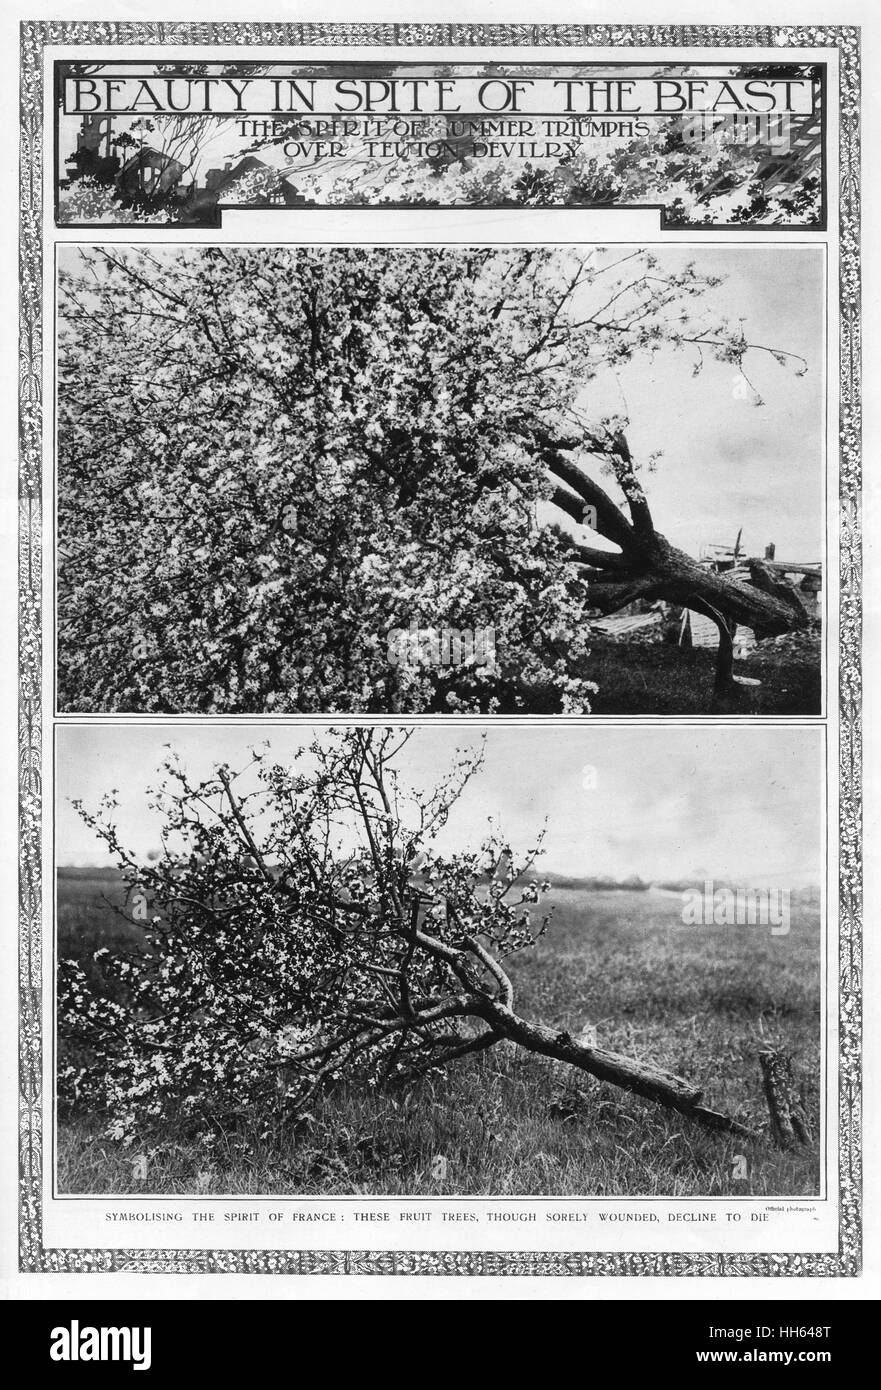 Bellezza a dispetto della bestia: Alberi da frutto in fiore, 1917 Foto Stock